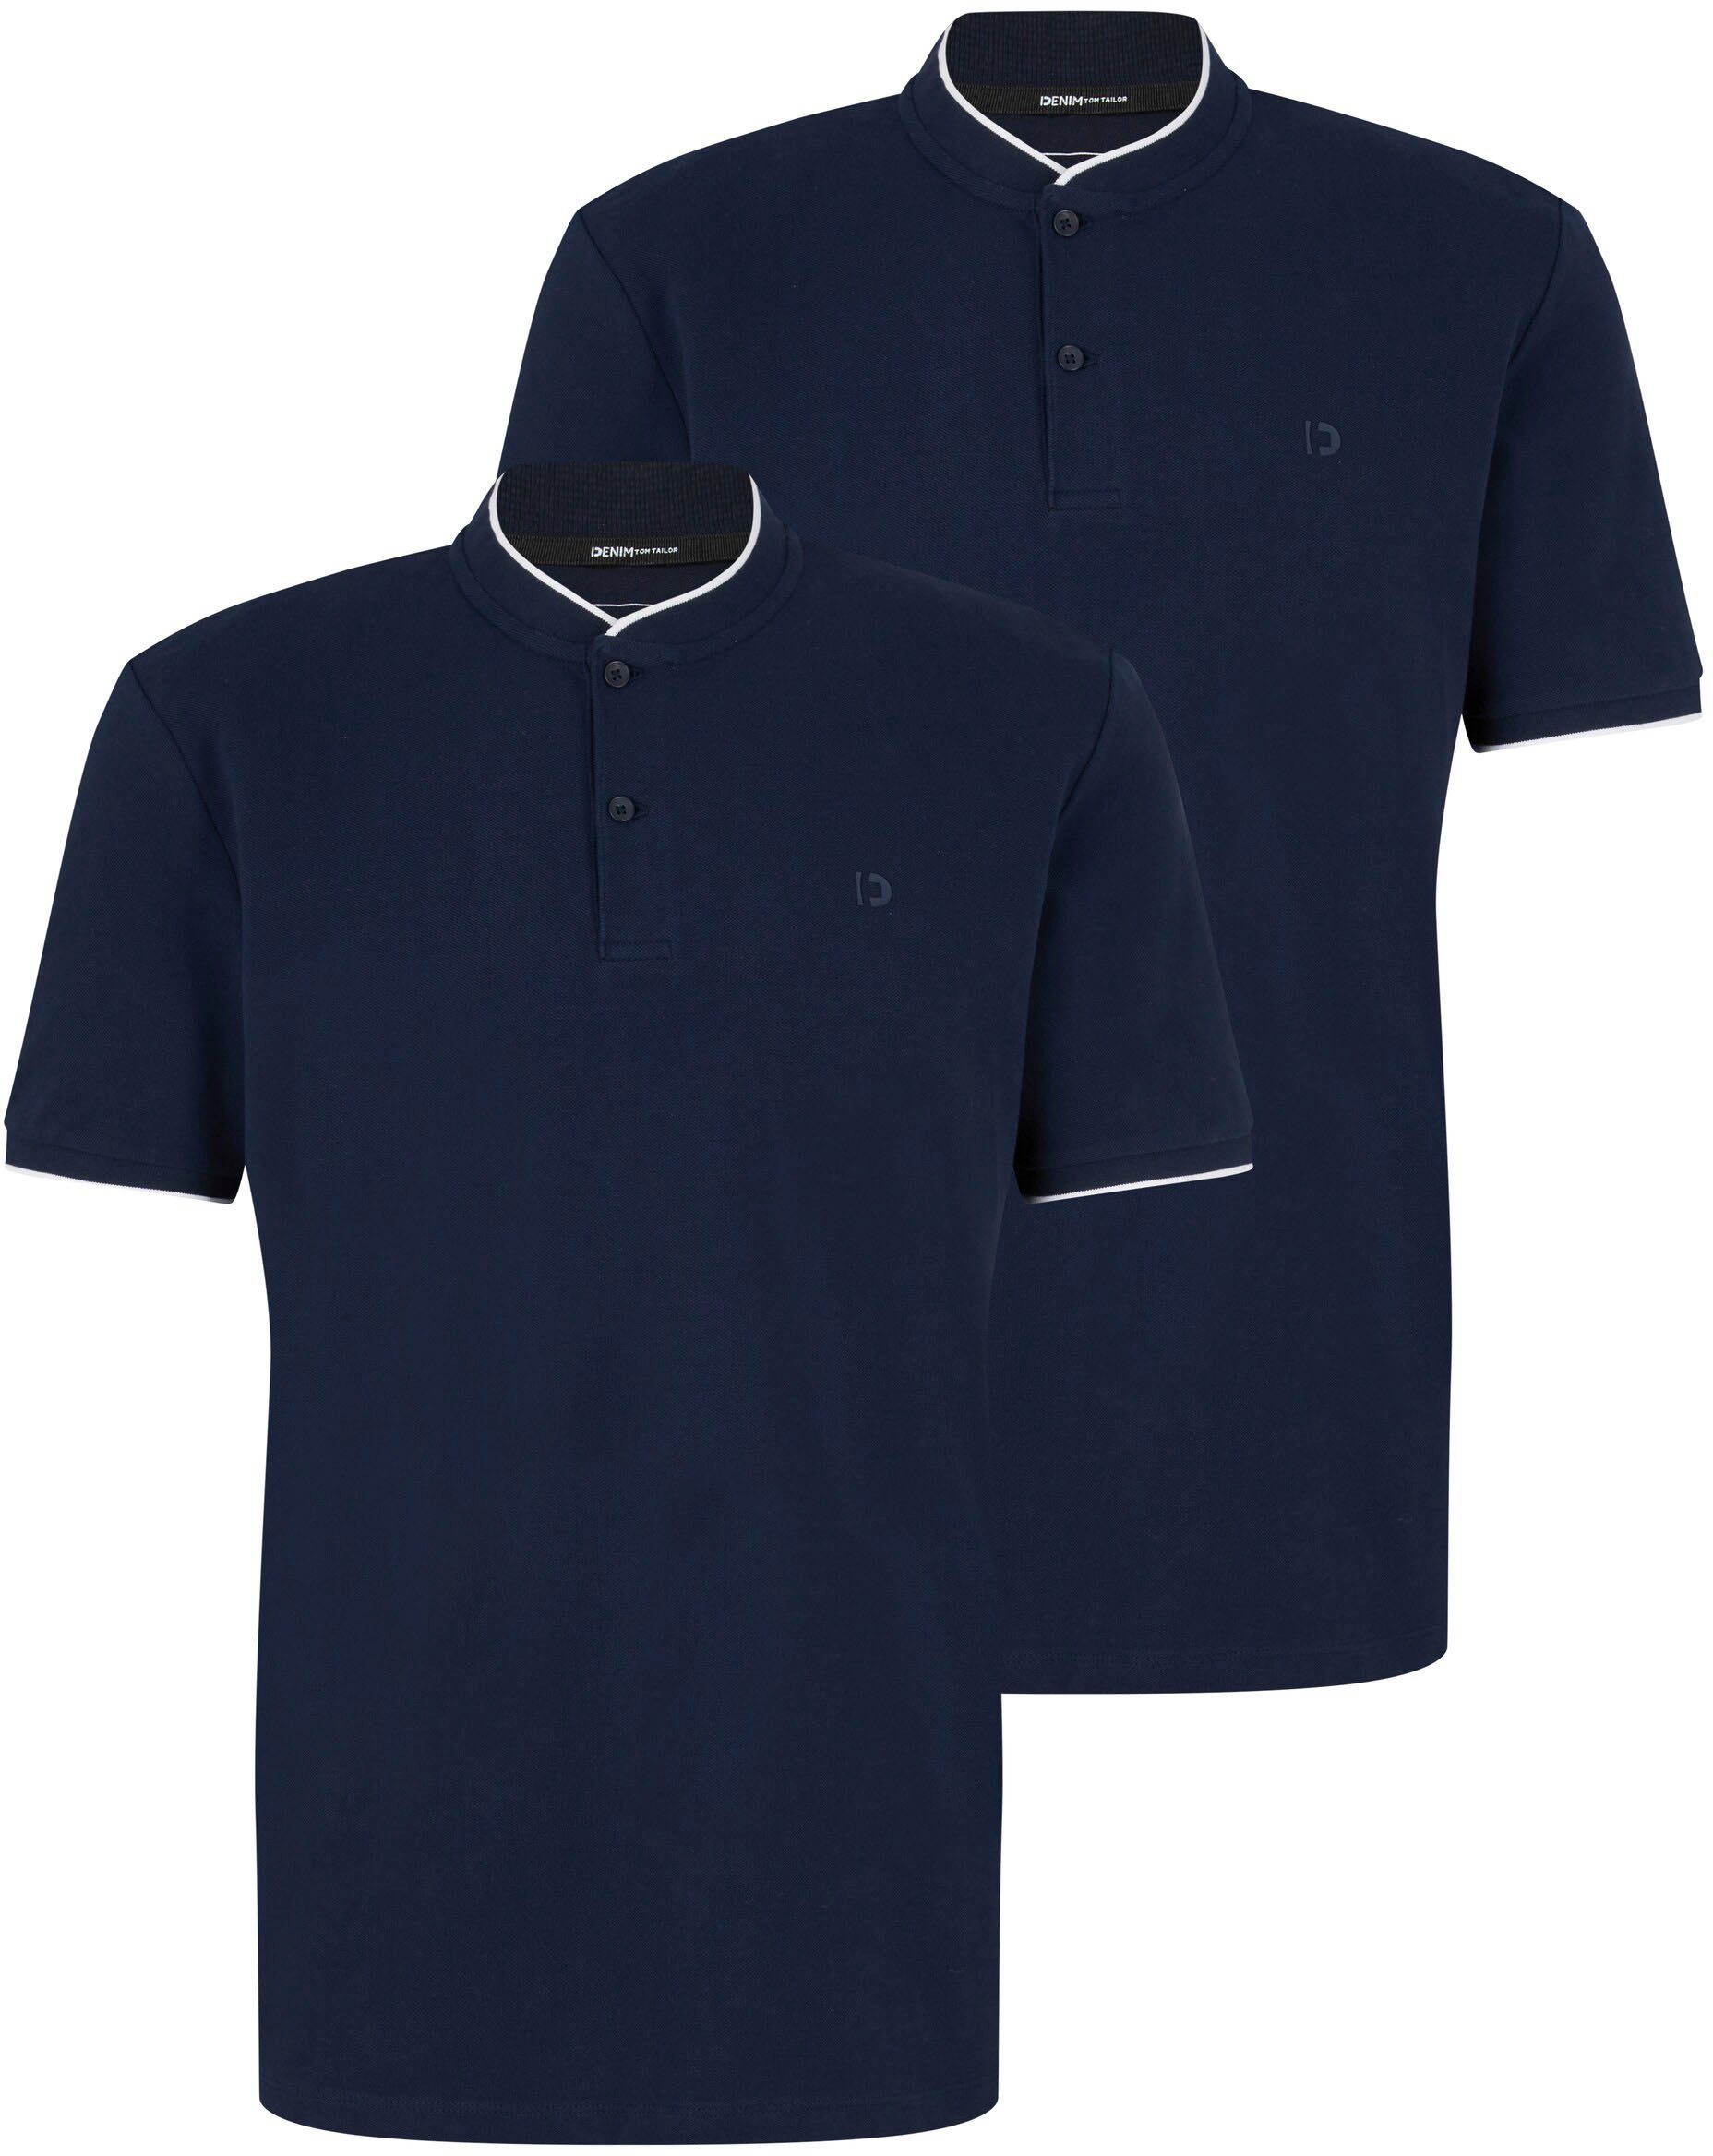 TOM TAILOR Denim Poloshirt mit 2-Knopf-Verschluss dunkelblau